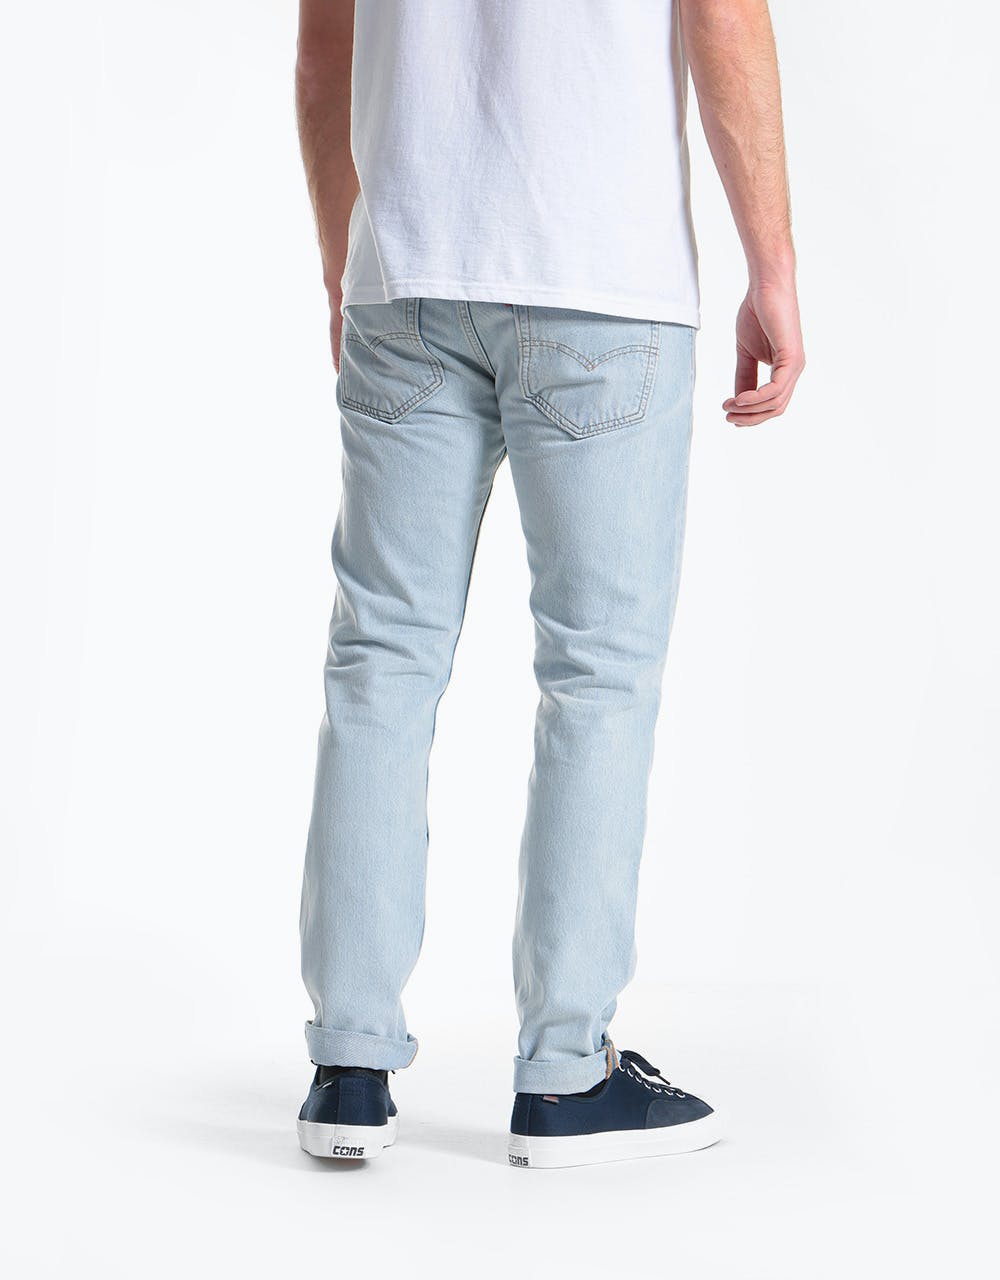 Levi's Skateboarding 512™ Slim Taper Denim Jeans - S&E Pacifica